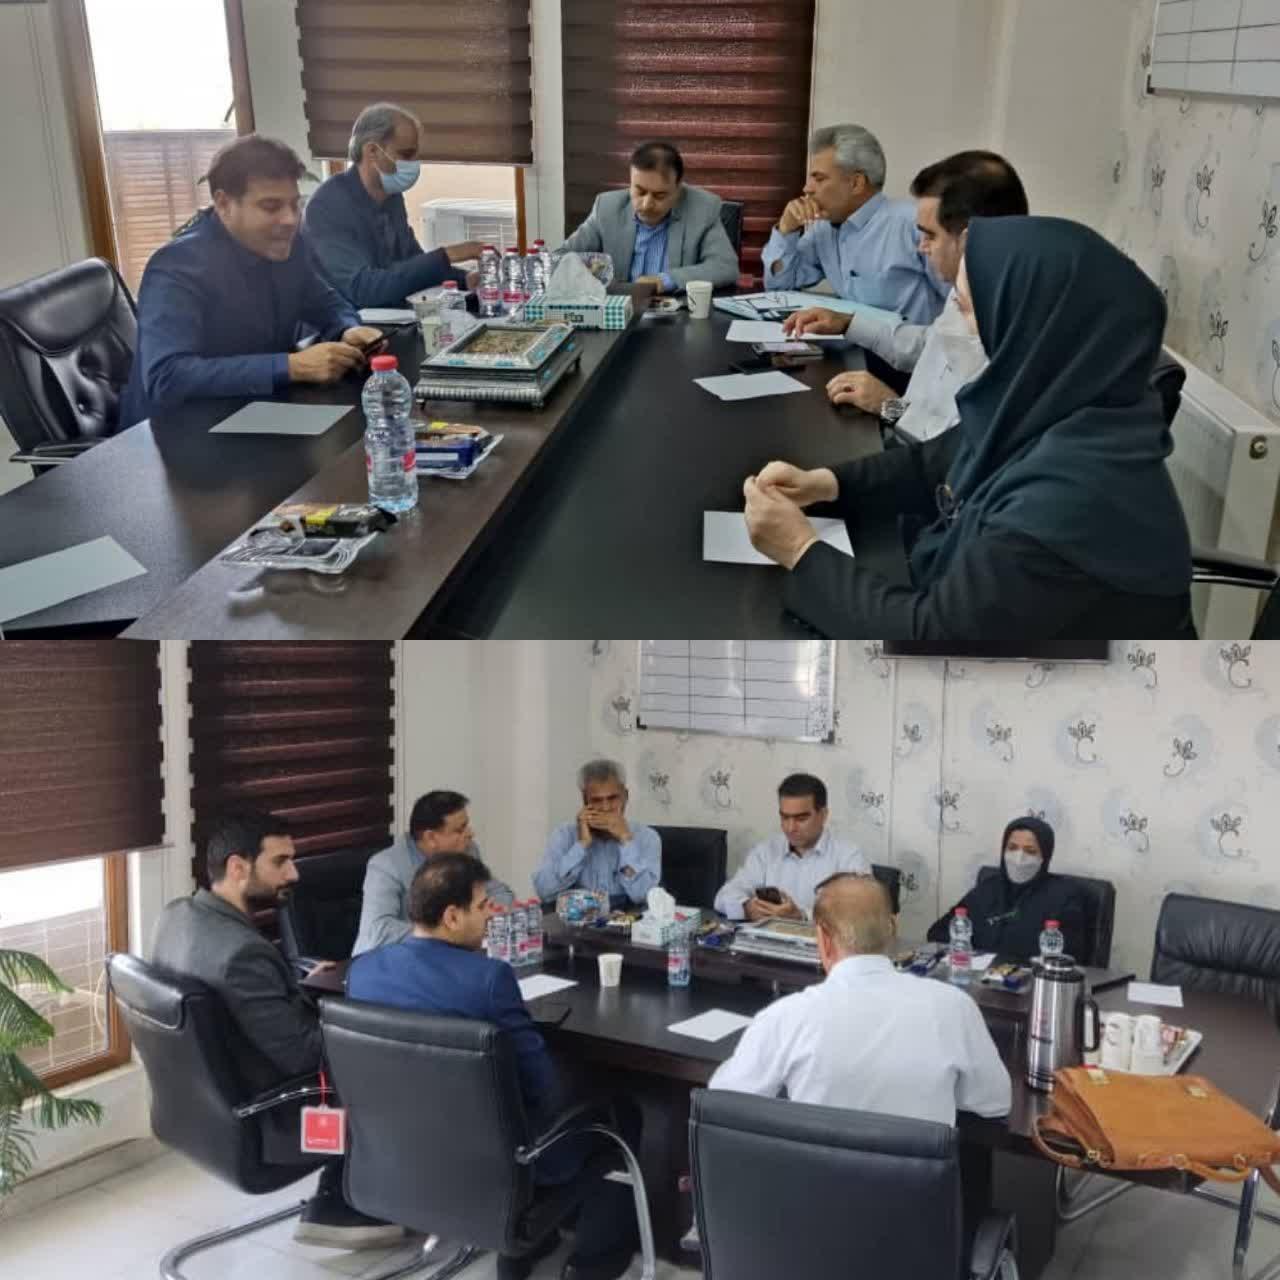 ششمین ملاقات چهره به چهره شهردار با شهروندان بوشهری در سال جاری برگزار شد؛ بررسی و مساعدت شهردار بوشهر در خصوص مطالبات قانونی همشهریان